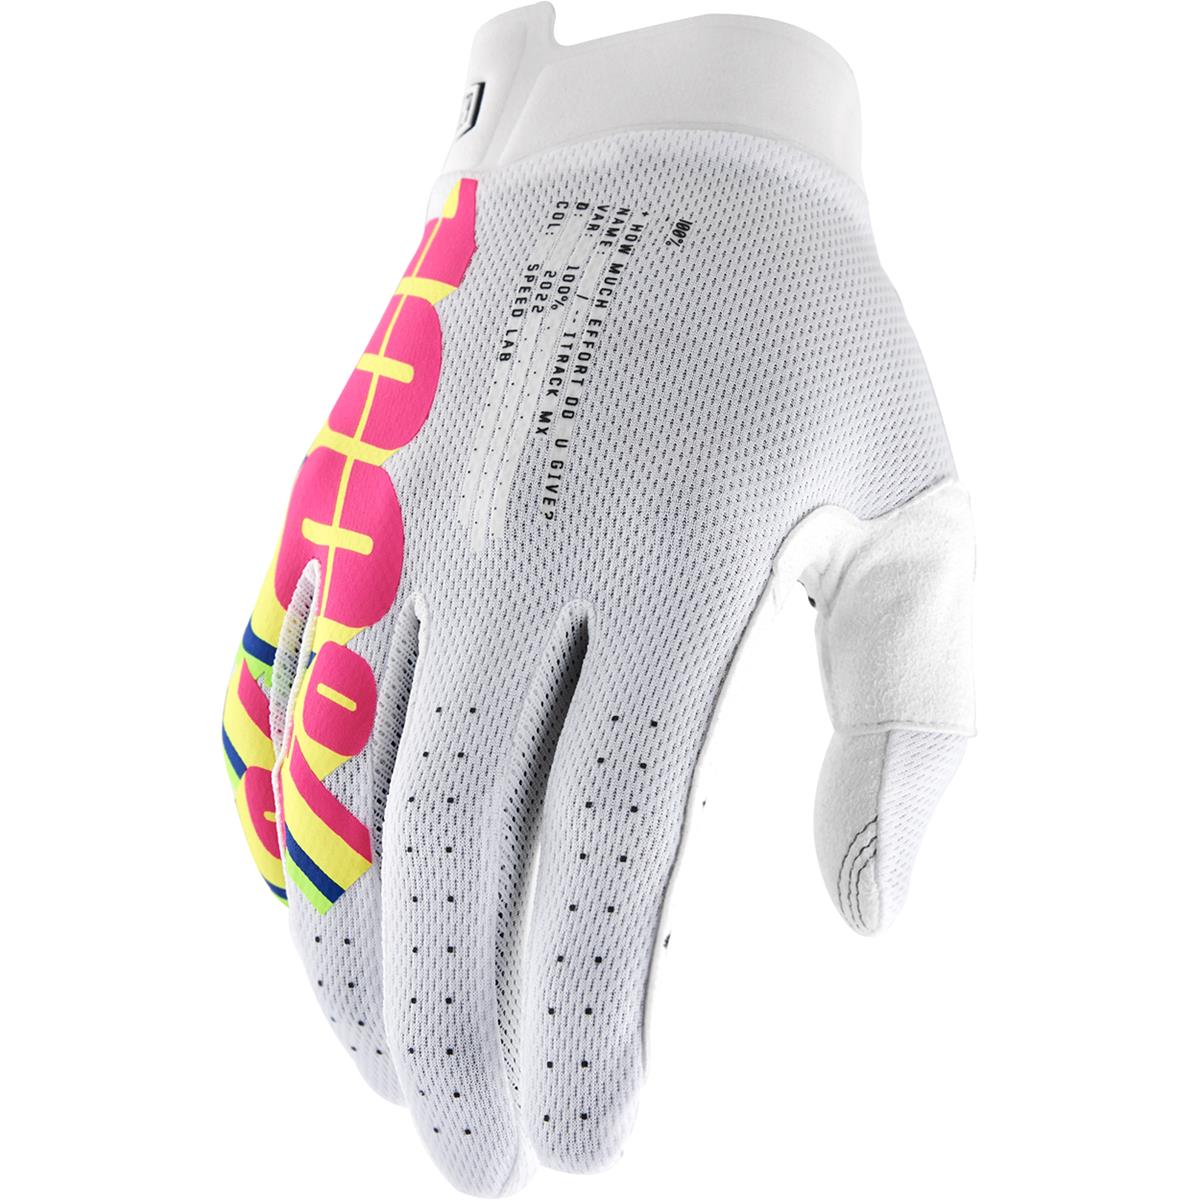 100% MTB Gloves iTrack System White